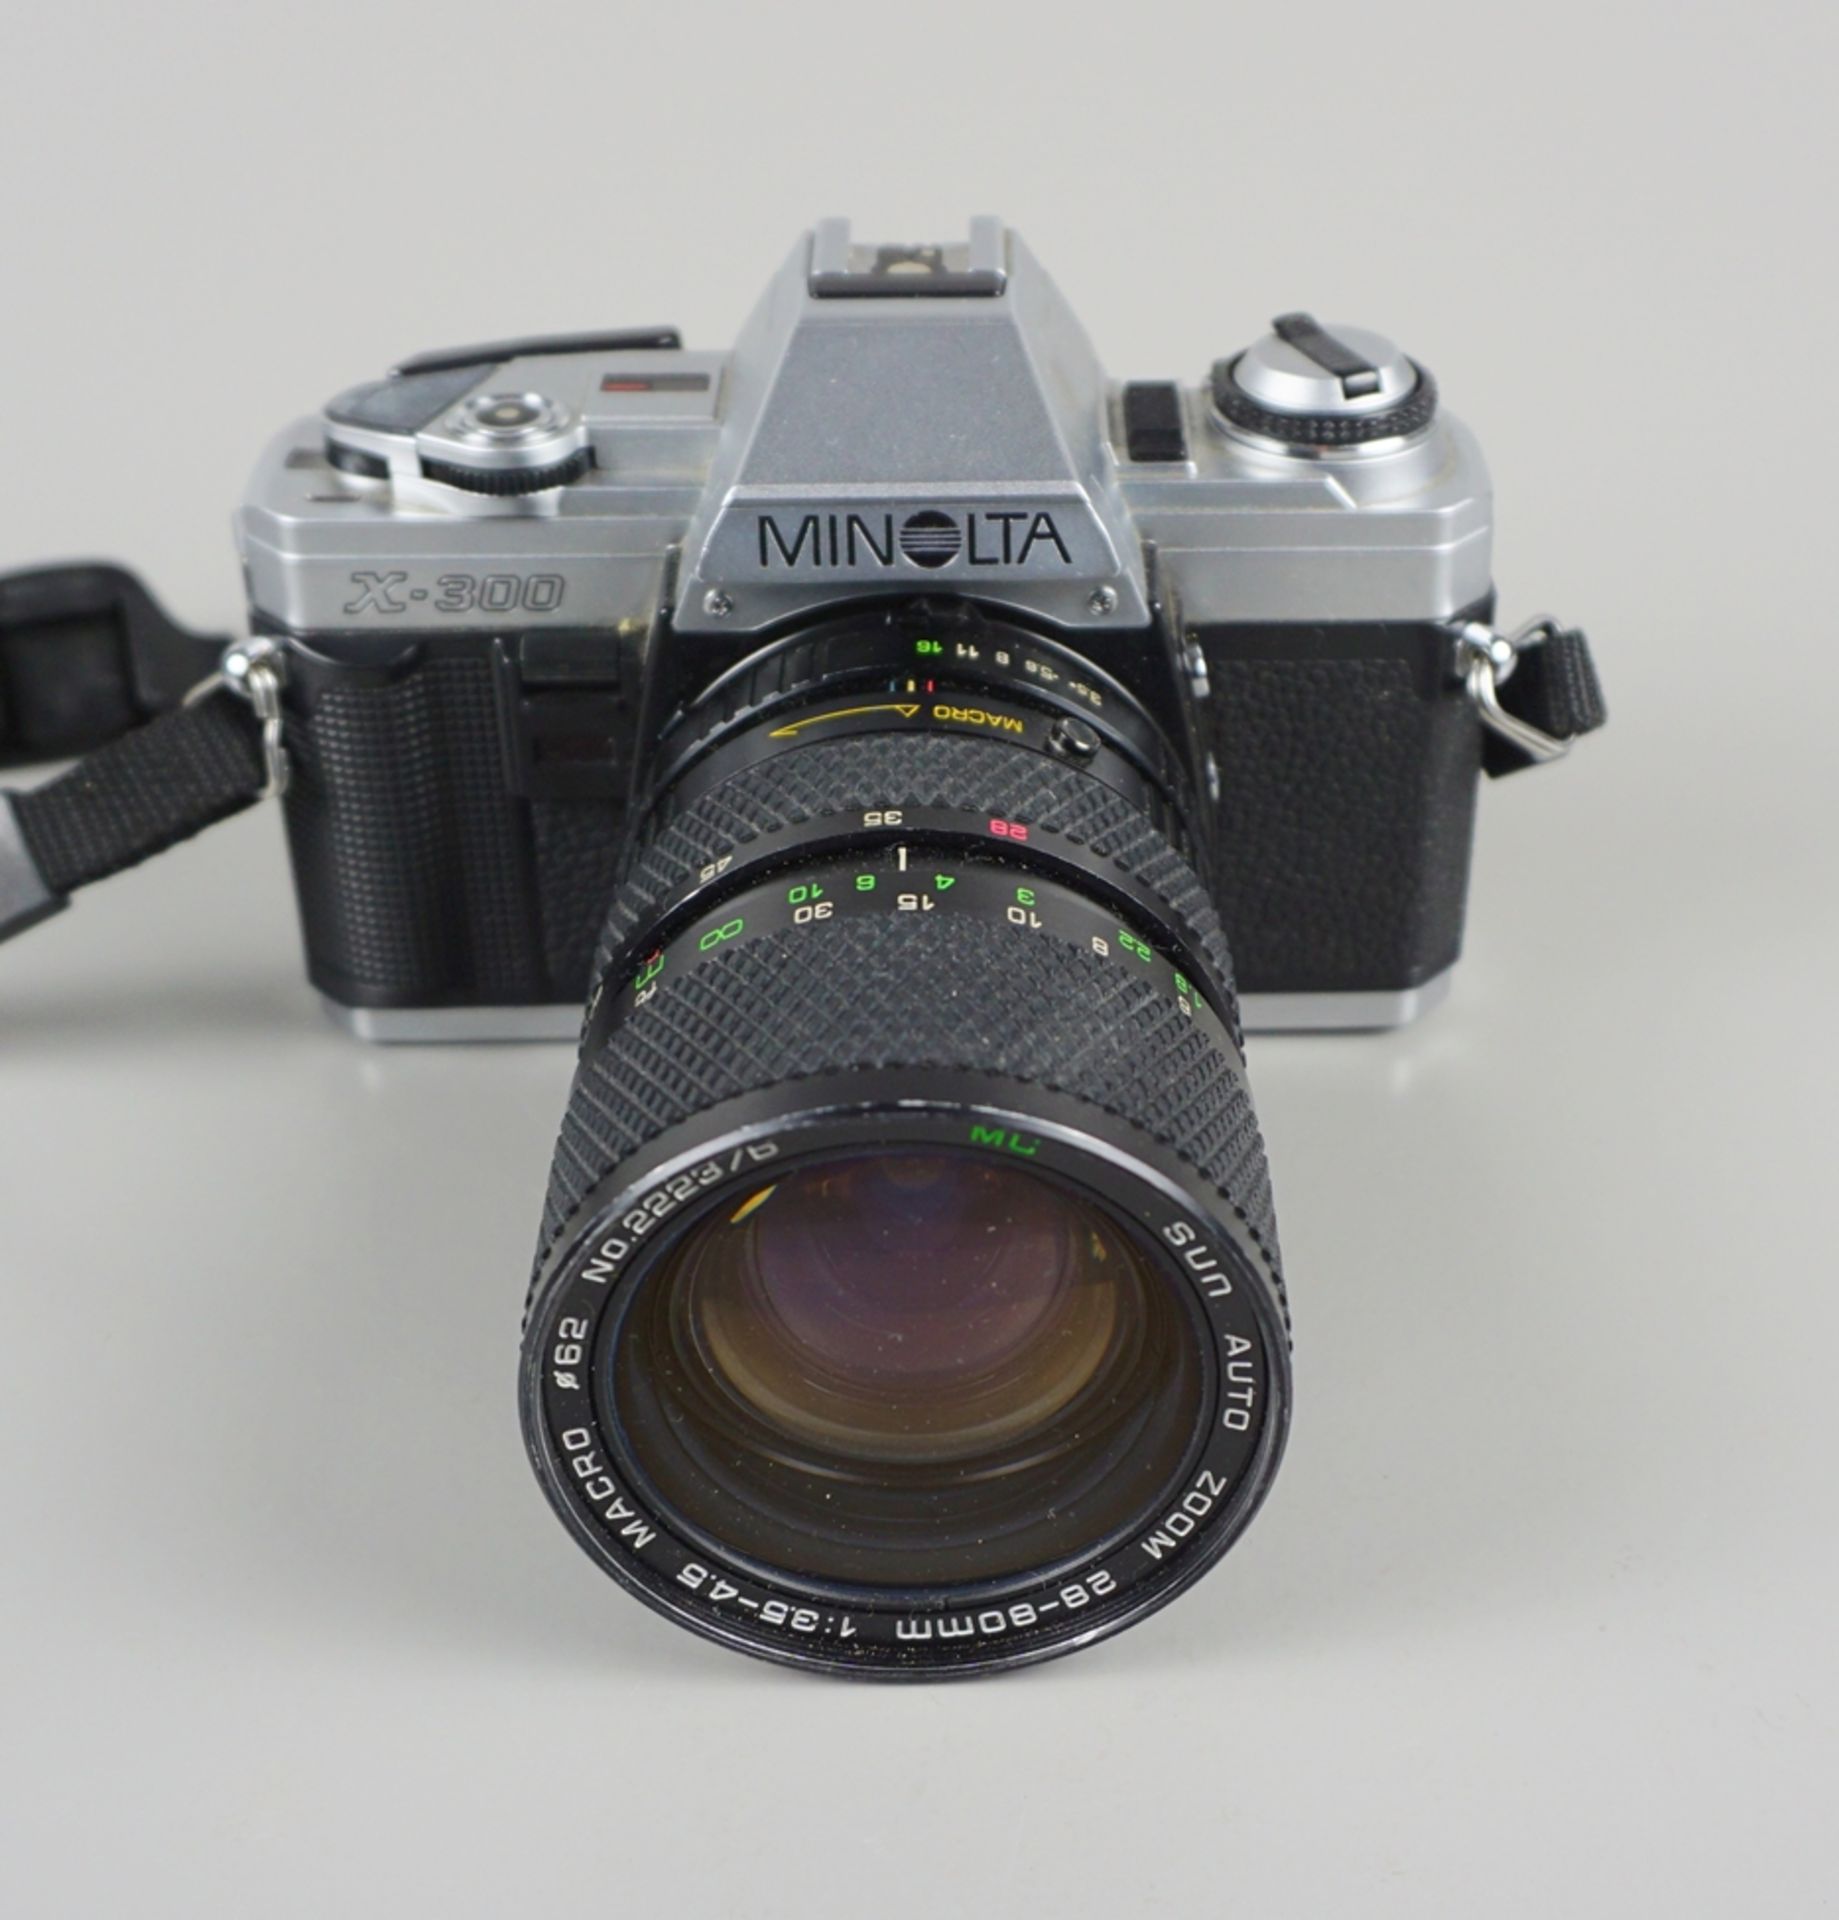 Spiegelreflexkamera Minolta X-300 mit Zubehör, 1980er Jahre - Image 2 of 3